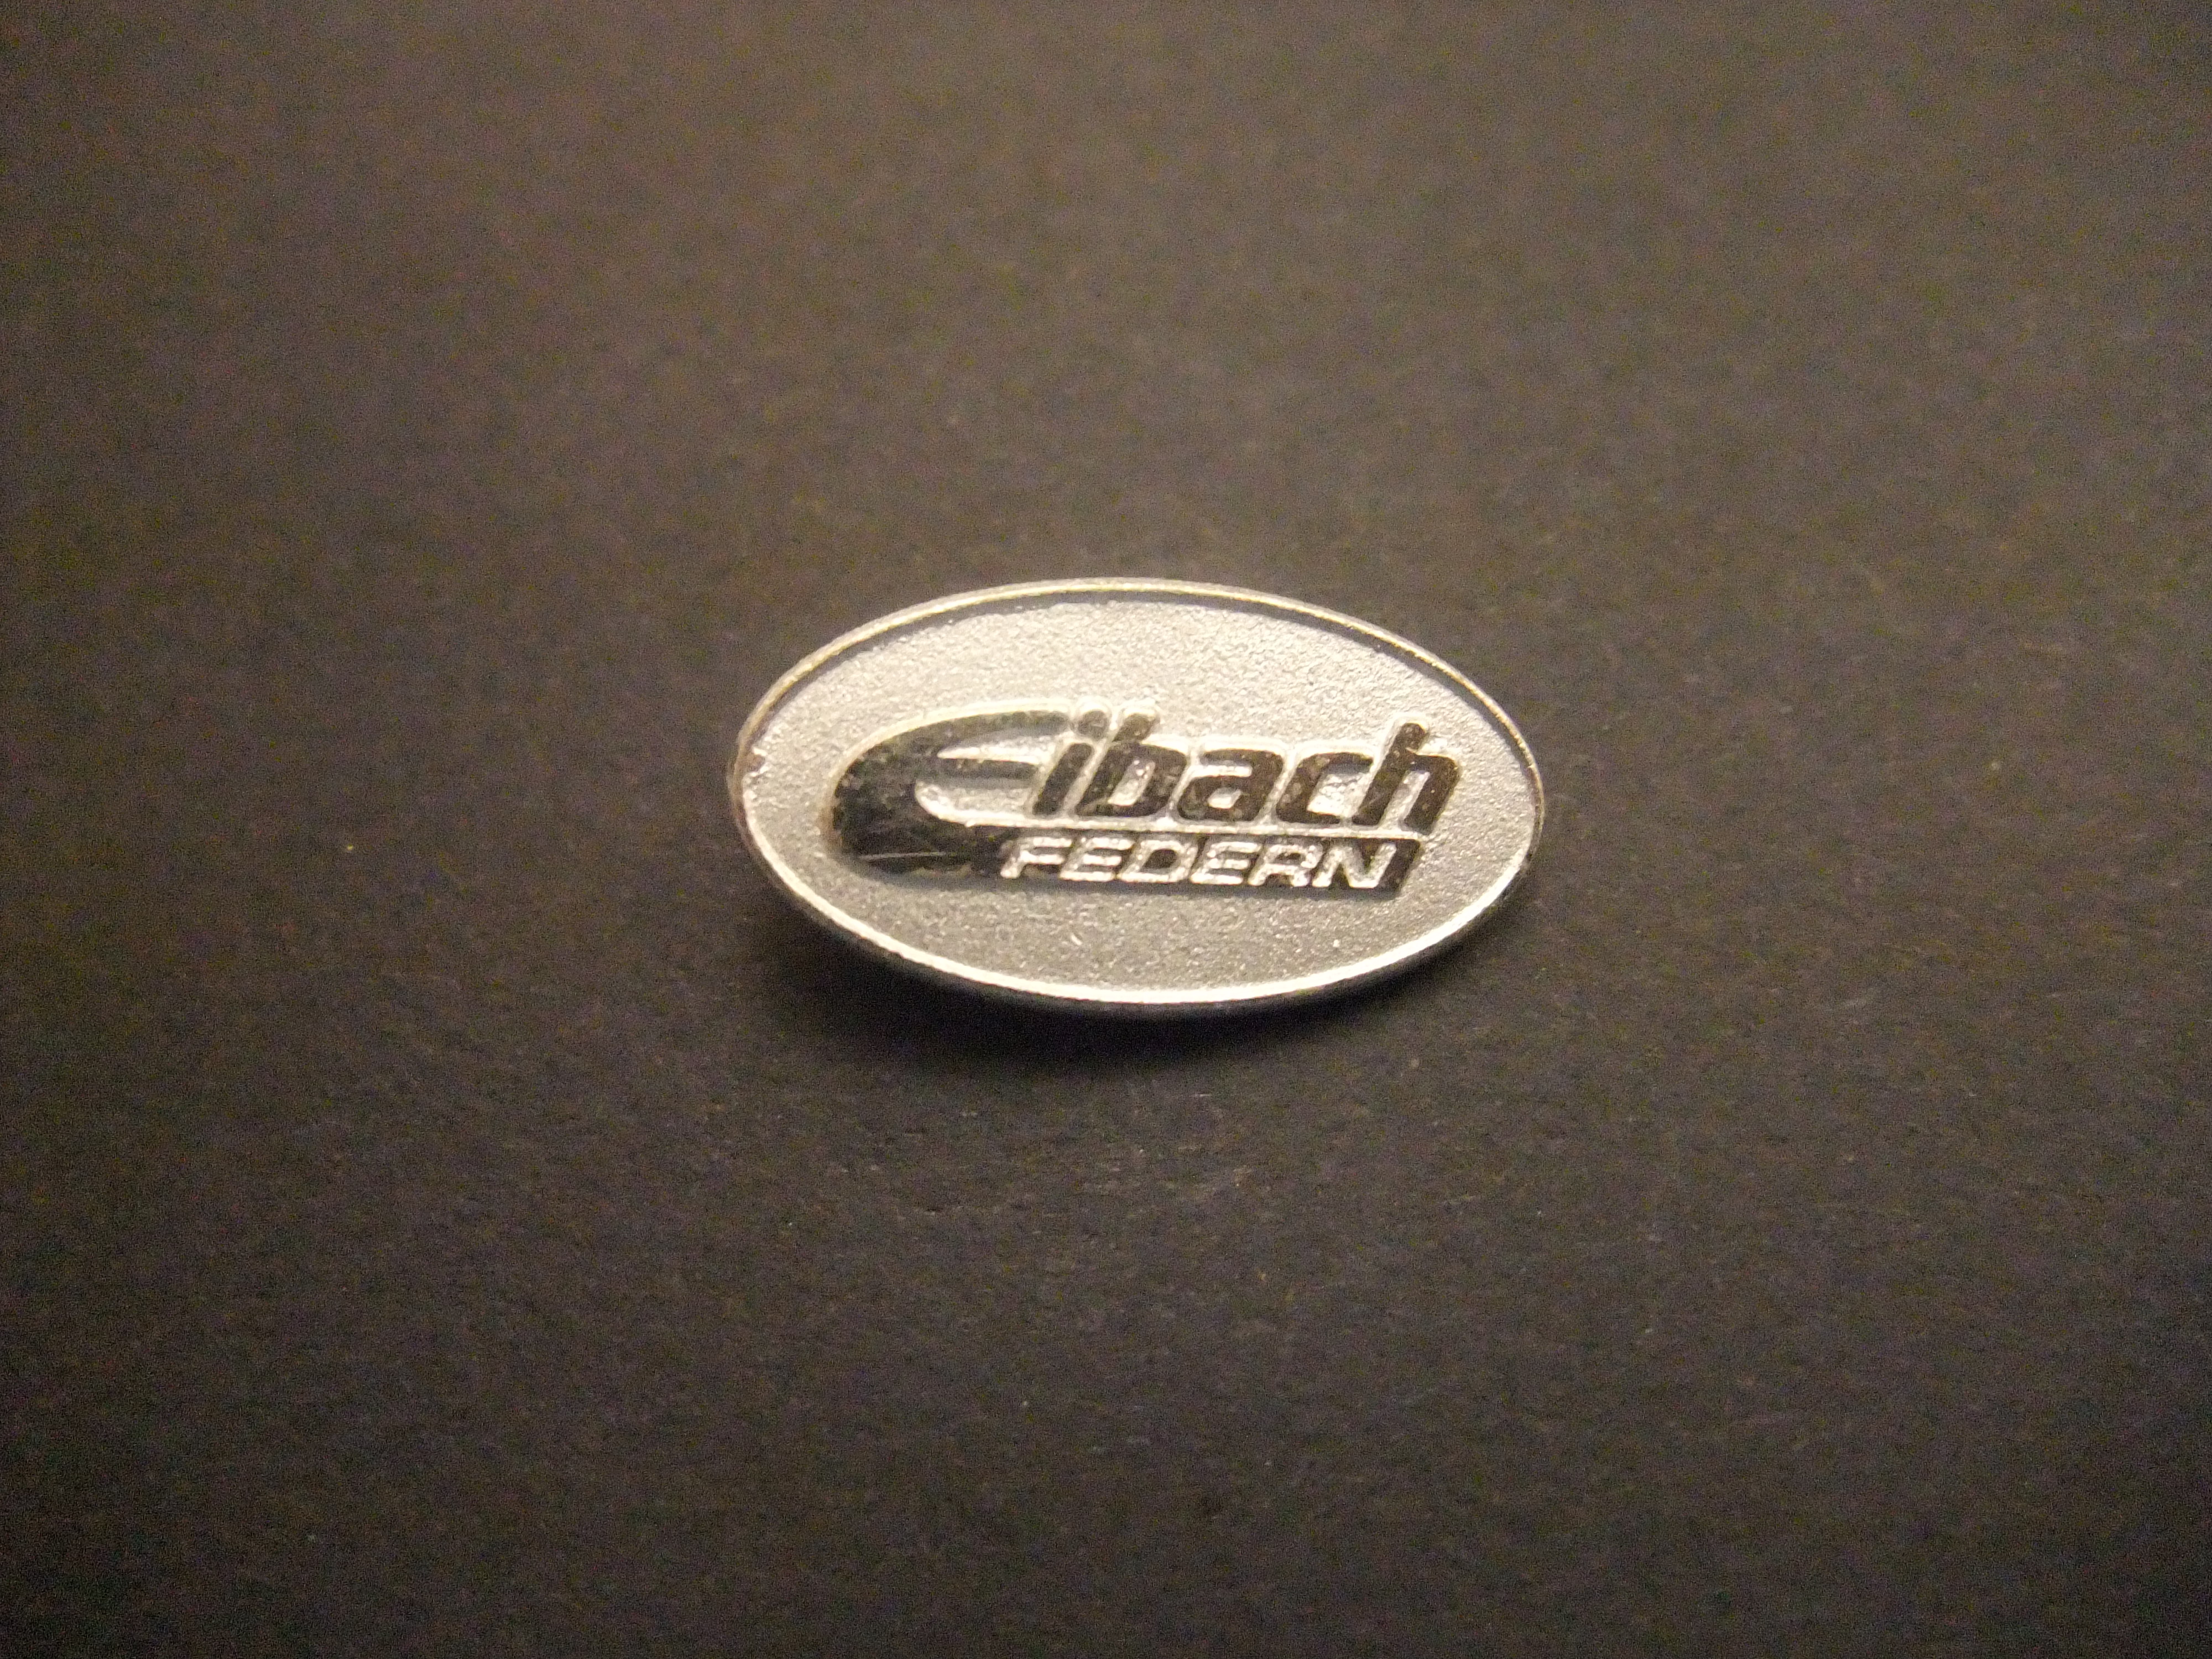 Eibach Federn Duitsland fabriek van hightechonderdelen, voor de auto